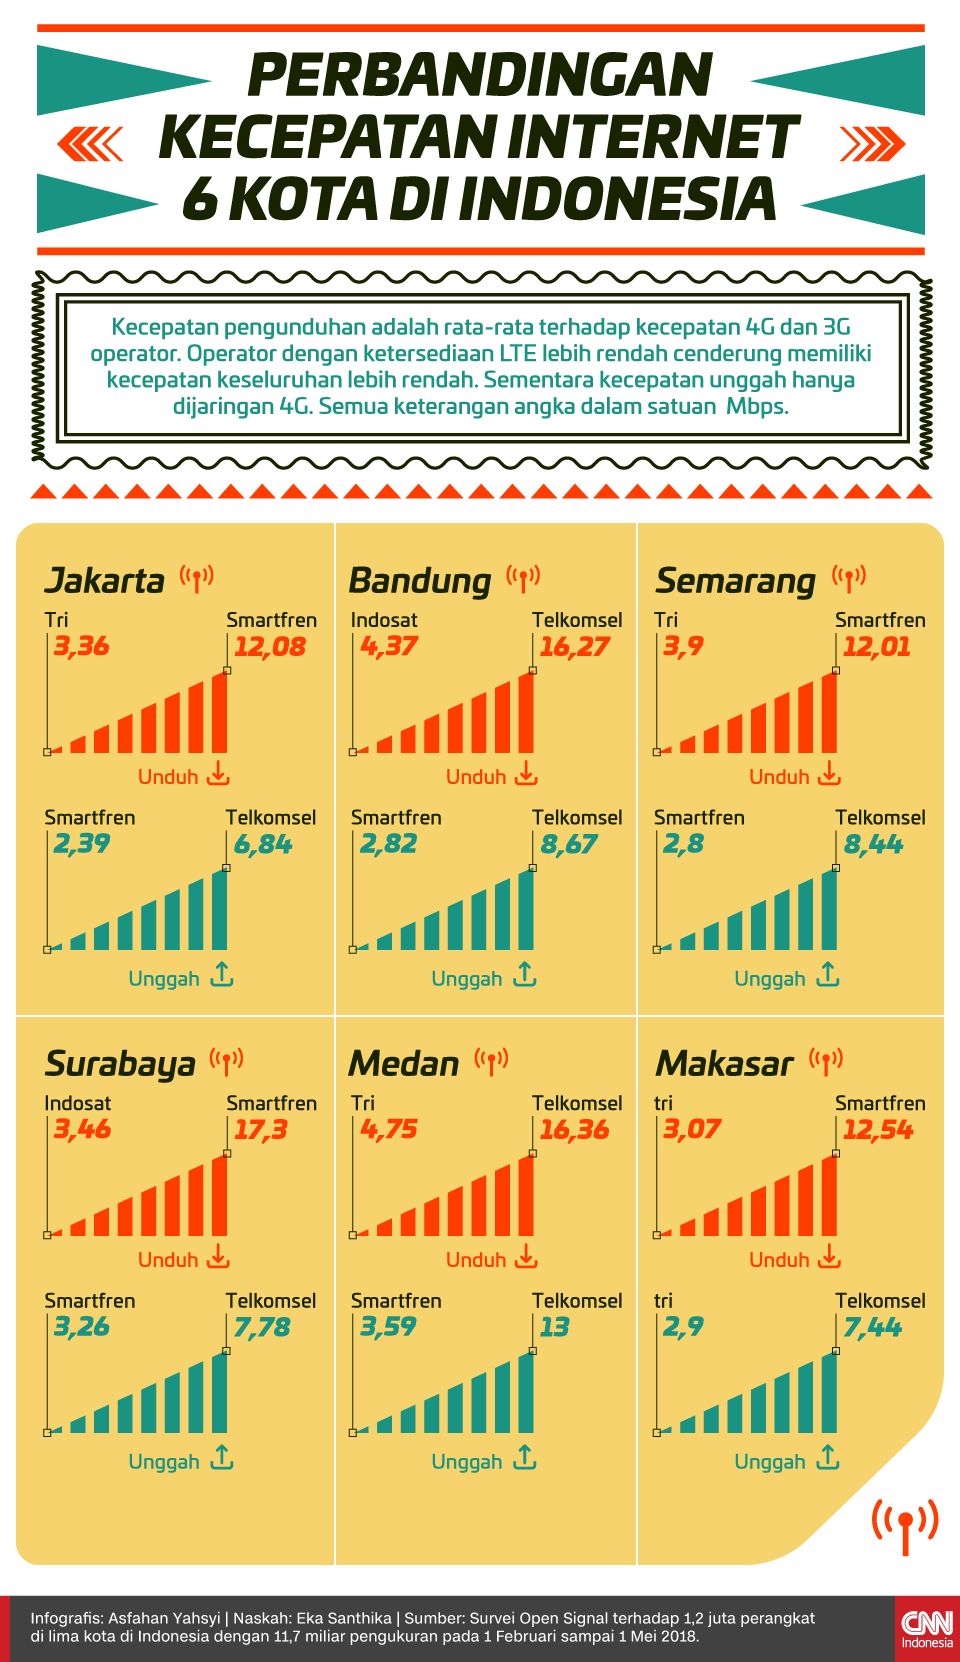 Infografis Perbandingan Kecepatan Internet 6 Kota di Indonesia